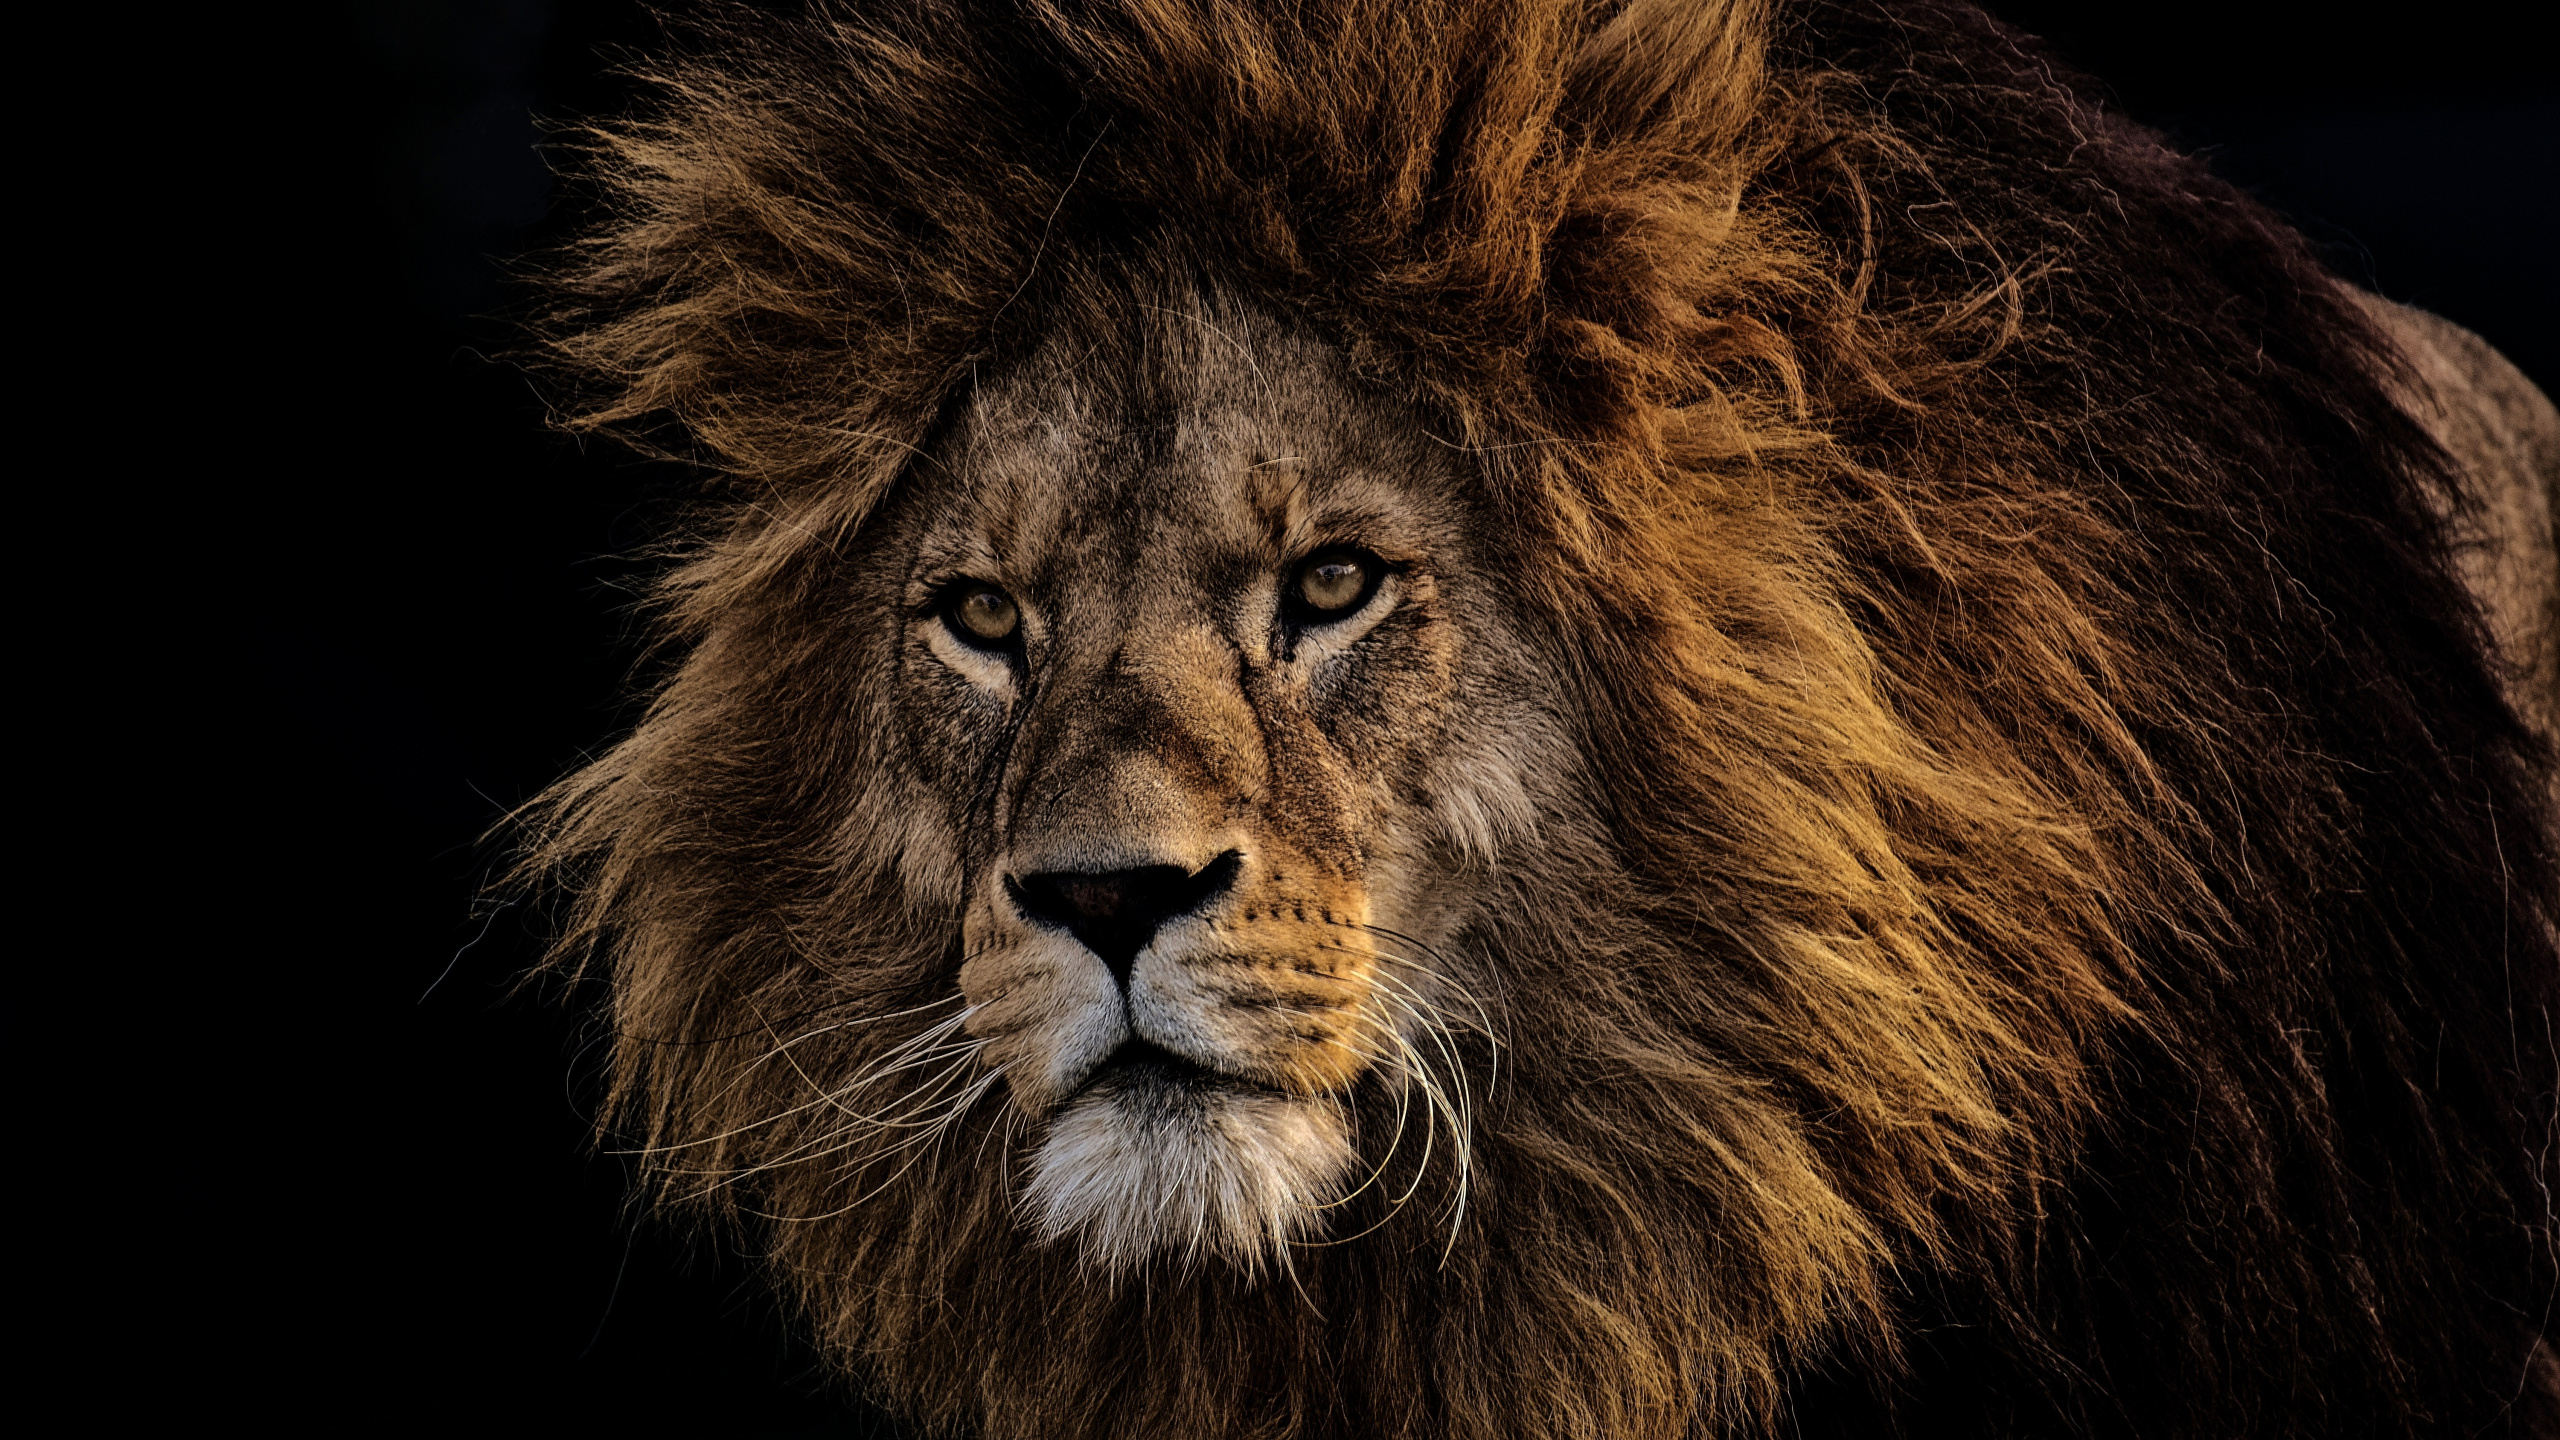 狮子, 头发, 野生动物, 马赛马的狮子, 猫科 壁纸 2560x1440 允许